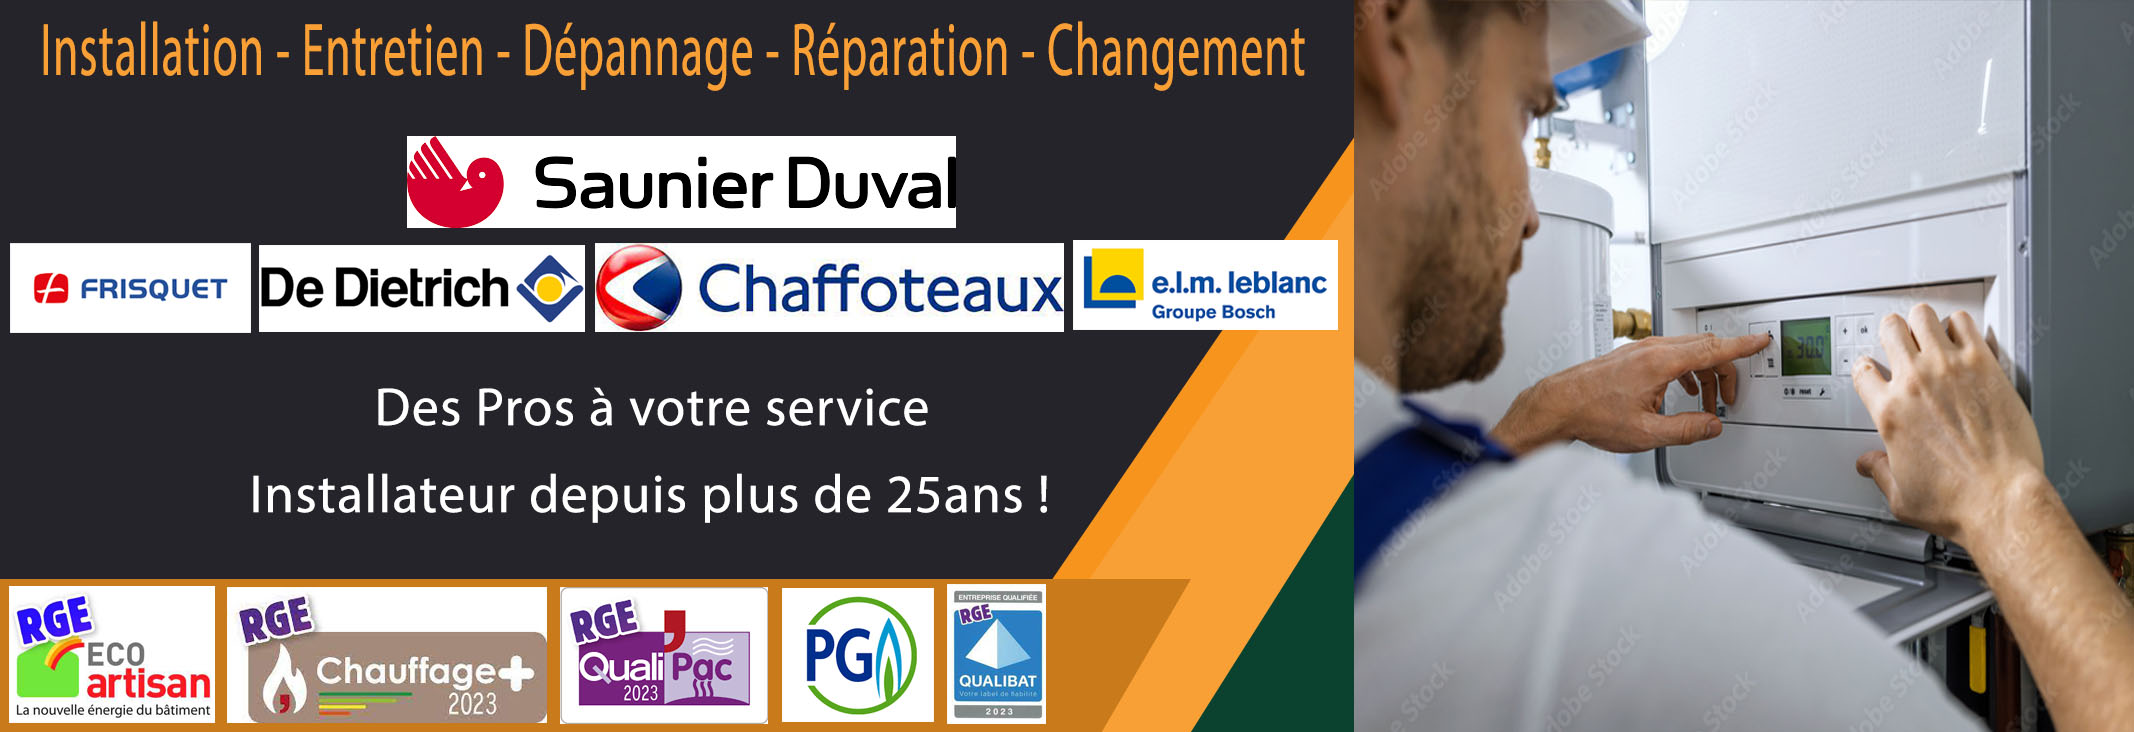 Réparation Chaudière à gaz Pierrefitte sur Seine 93380